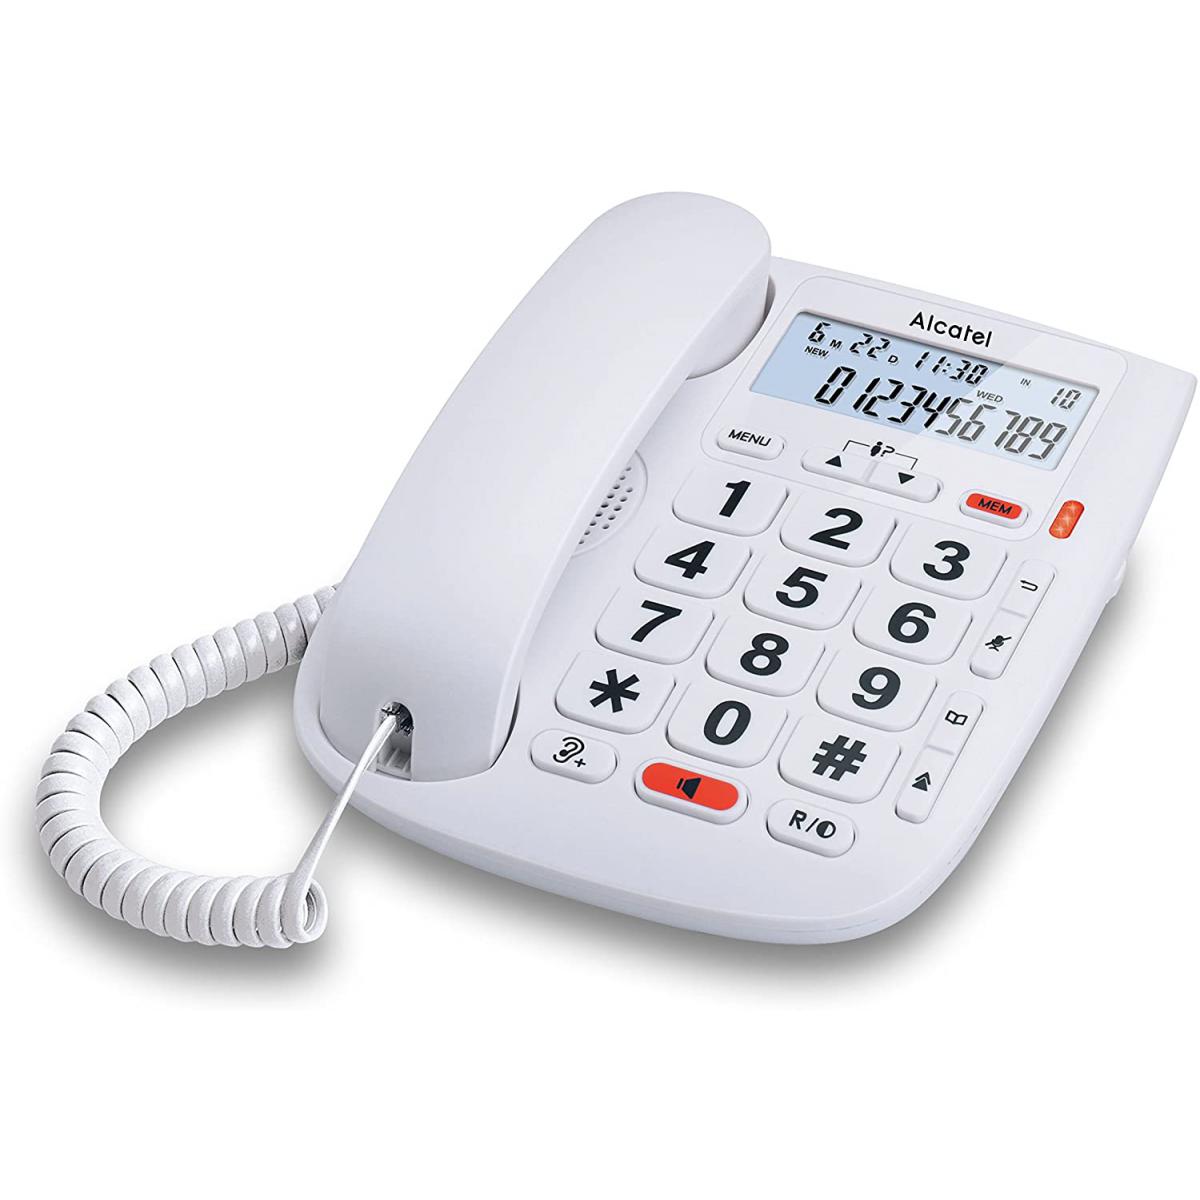 Alcatel - telephone Filaire Larges Touches pour Les séniors blanc - Téléphone fixe filaire